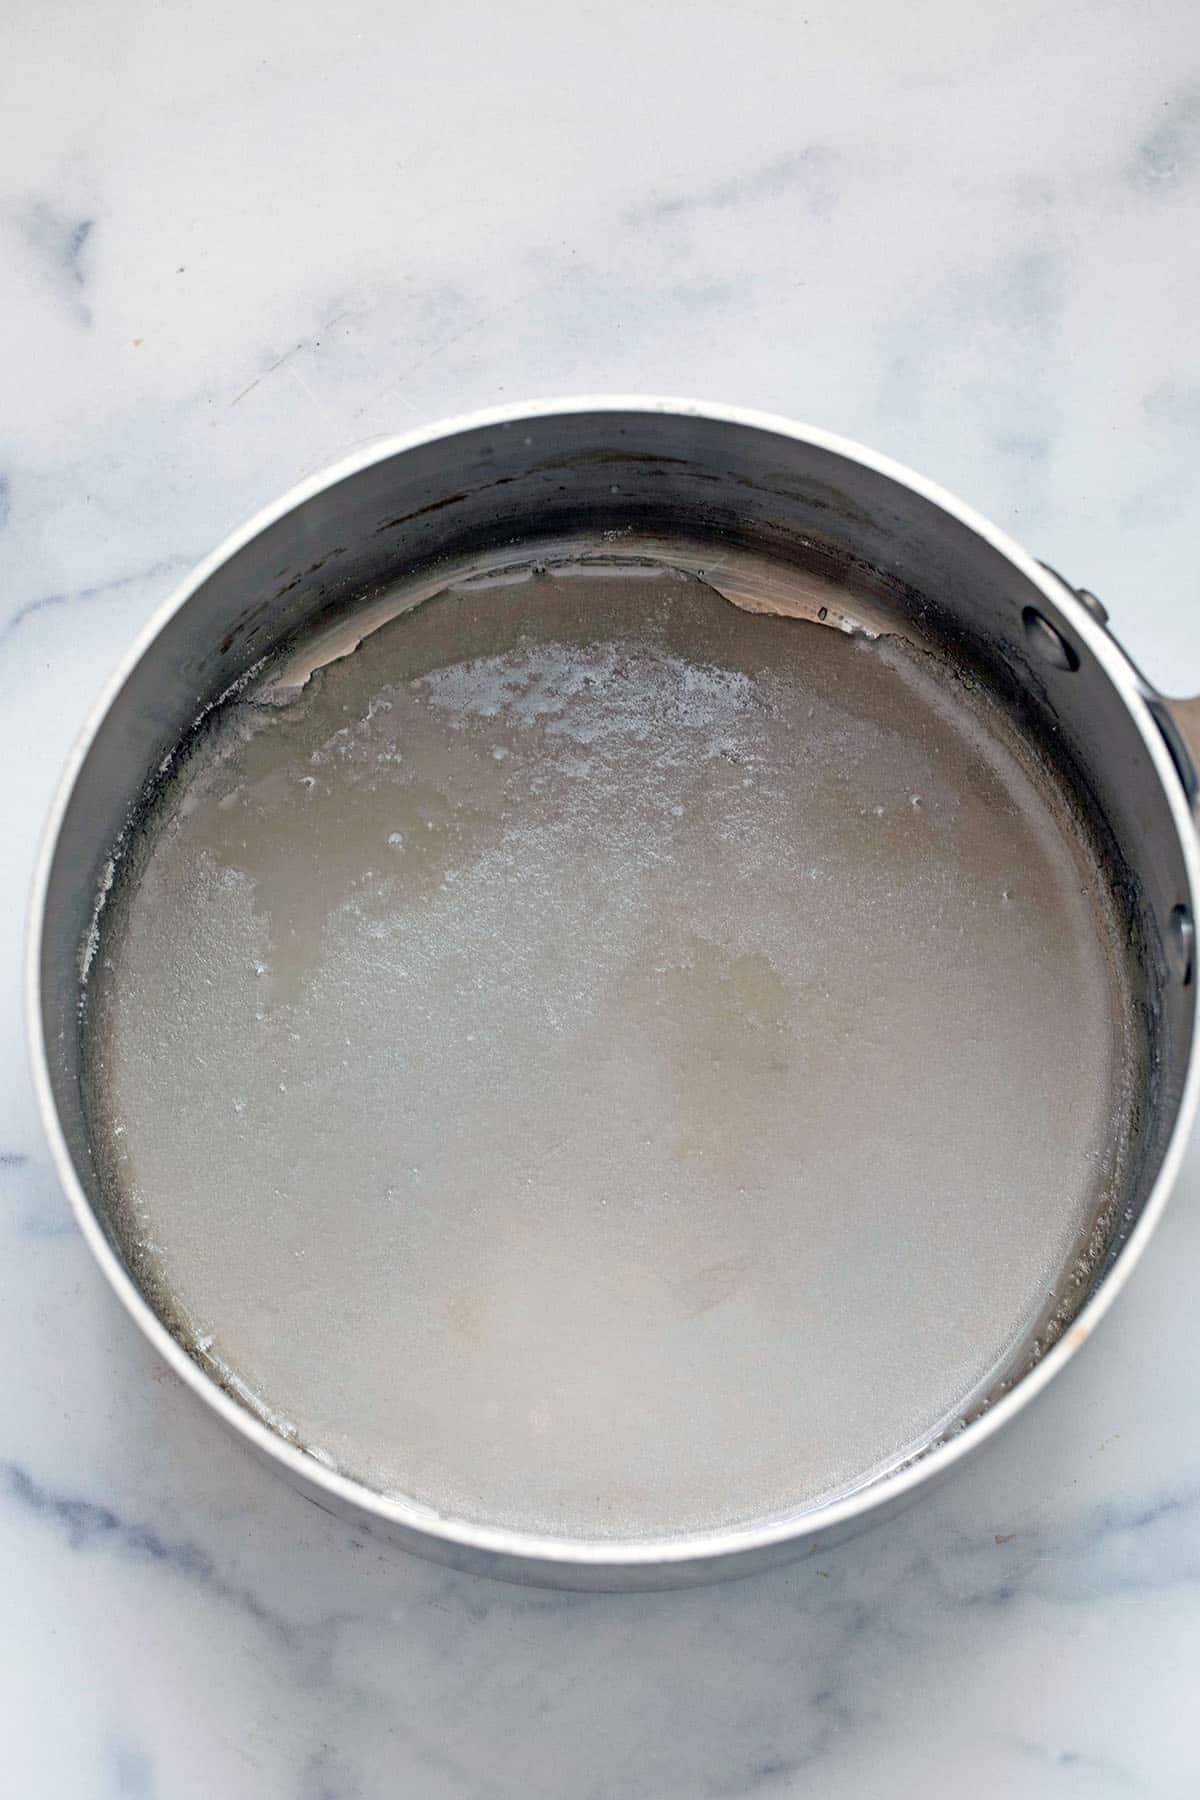 Sugar and water in saucepan.